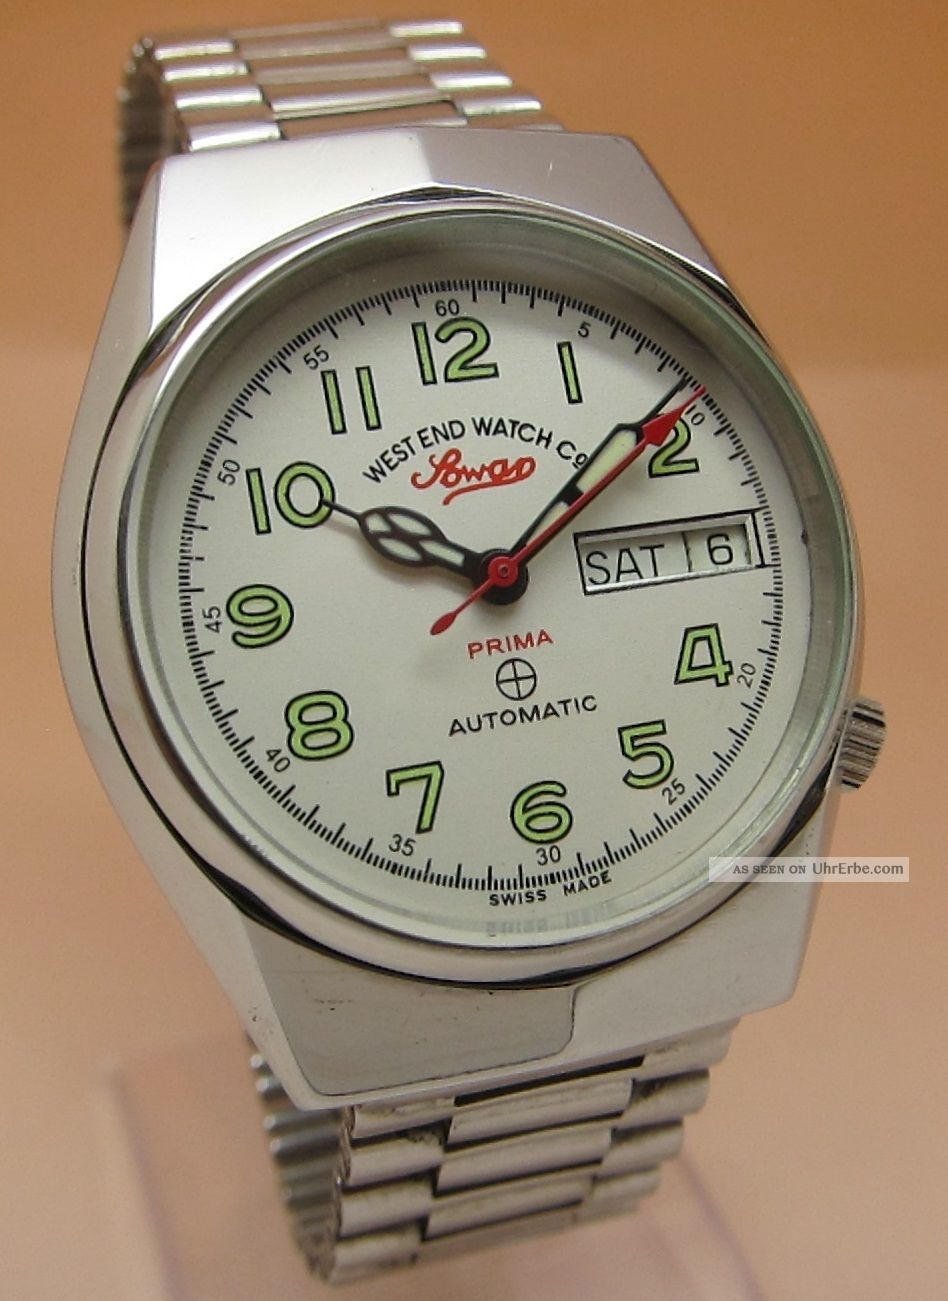 West End Watch Sowar Prima Mechanische Automatik Uhr Datum & Taganzeige Armbanduhren Bild